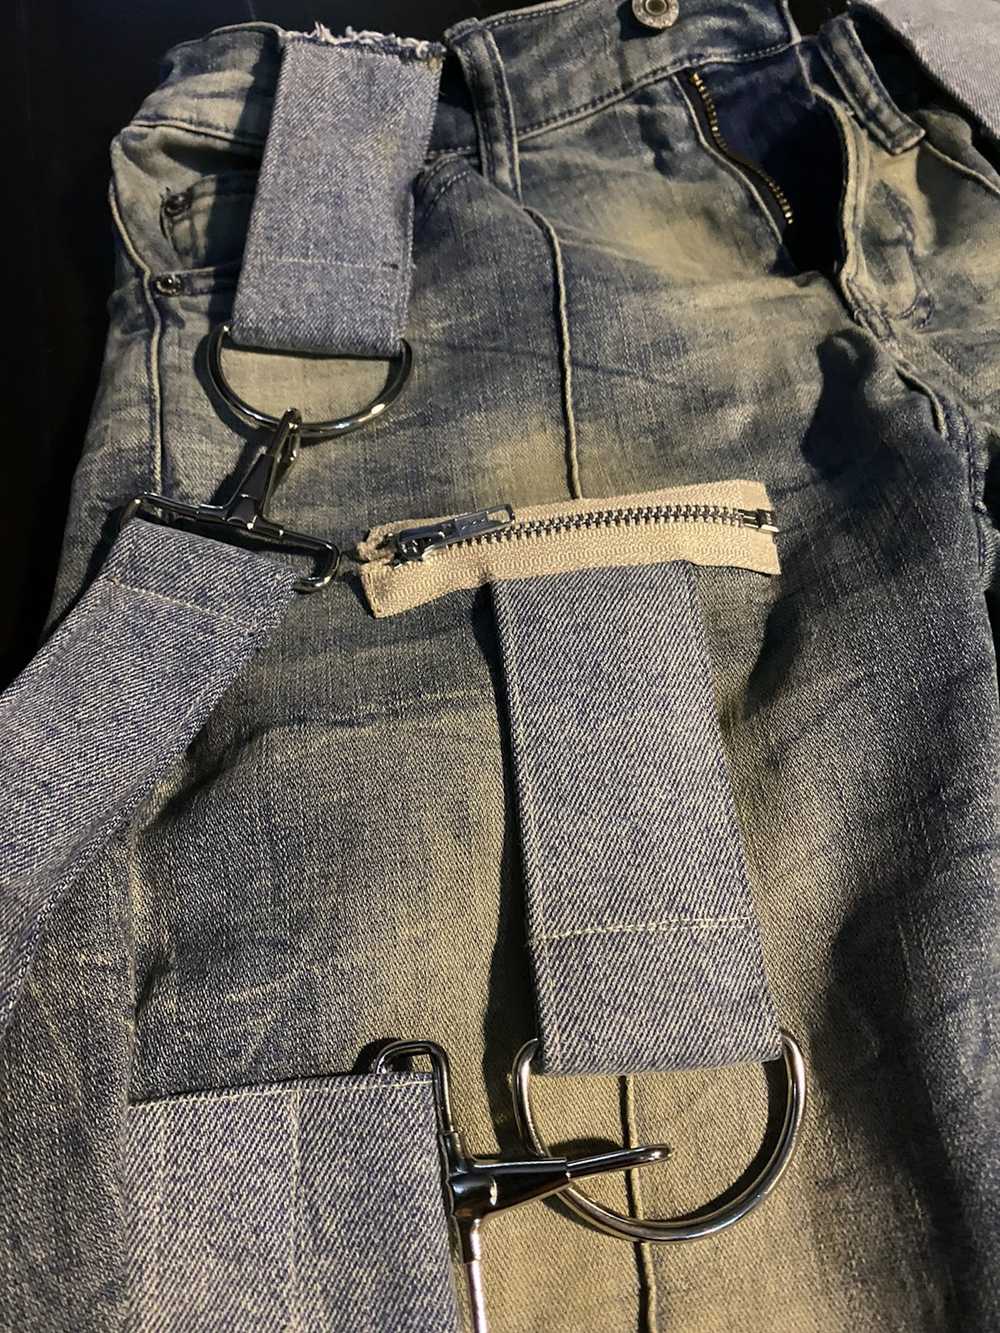 Custom Custom Arizona stretch skinny jeans sz 29 - image 4